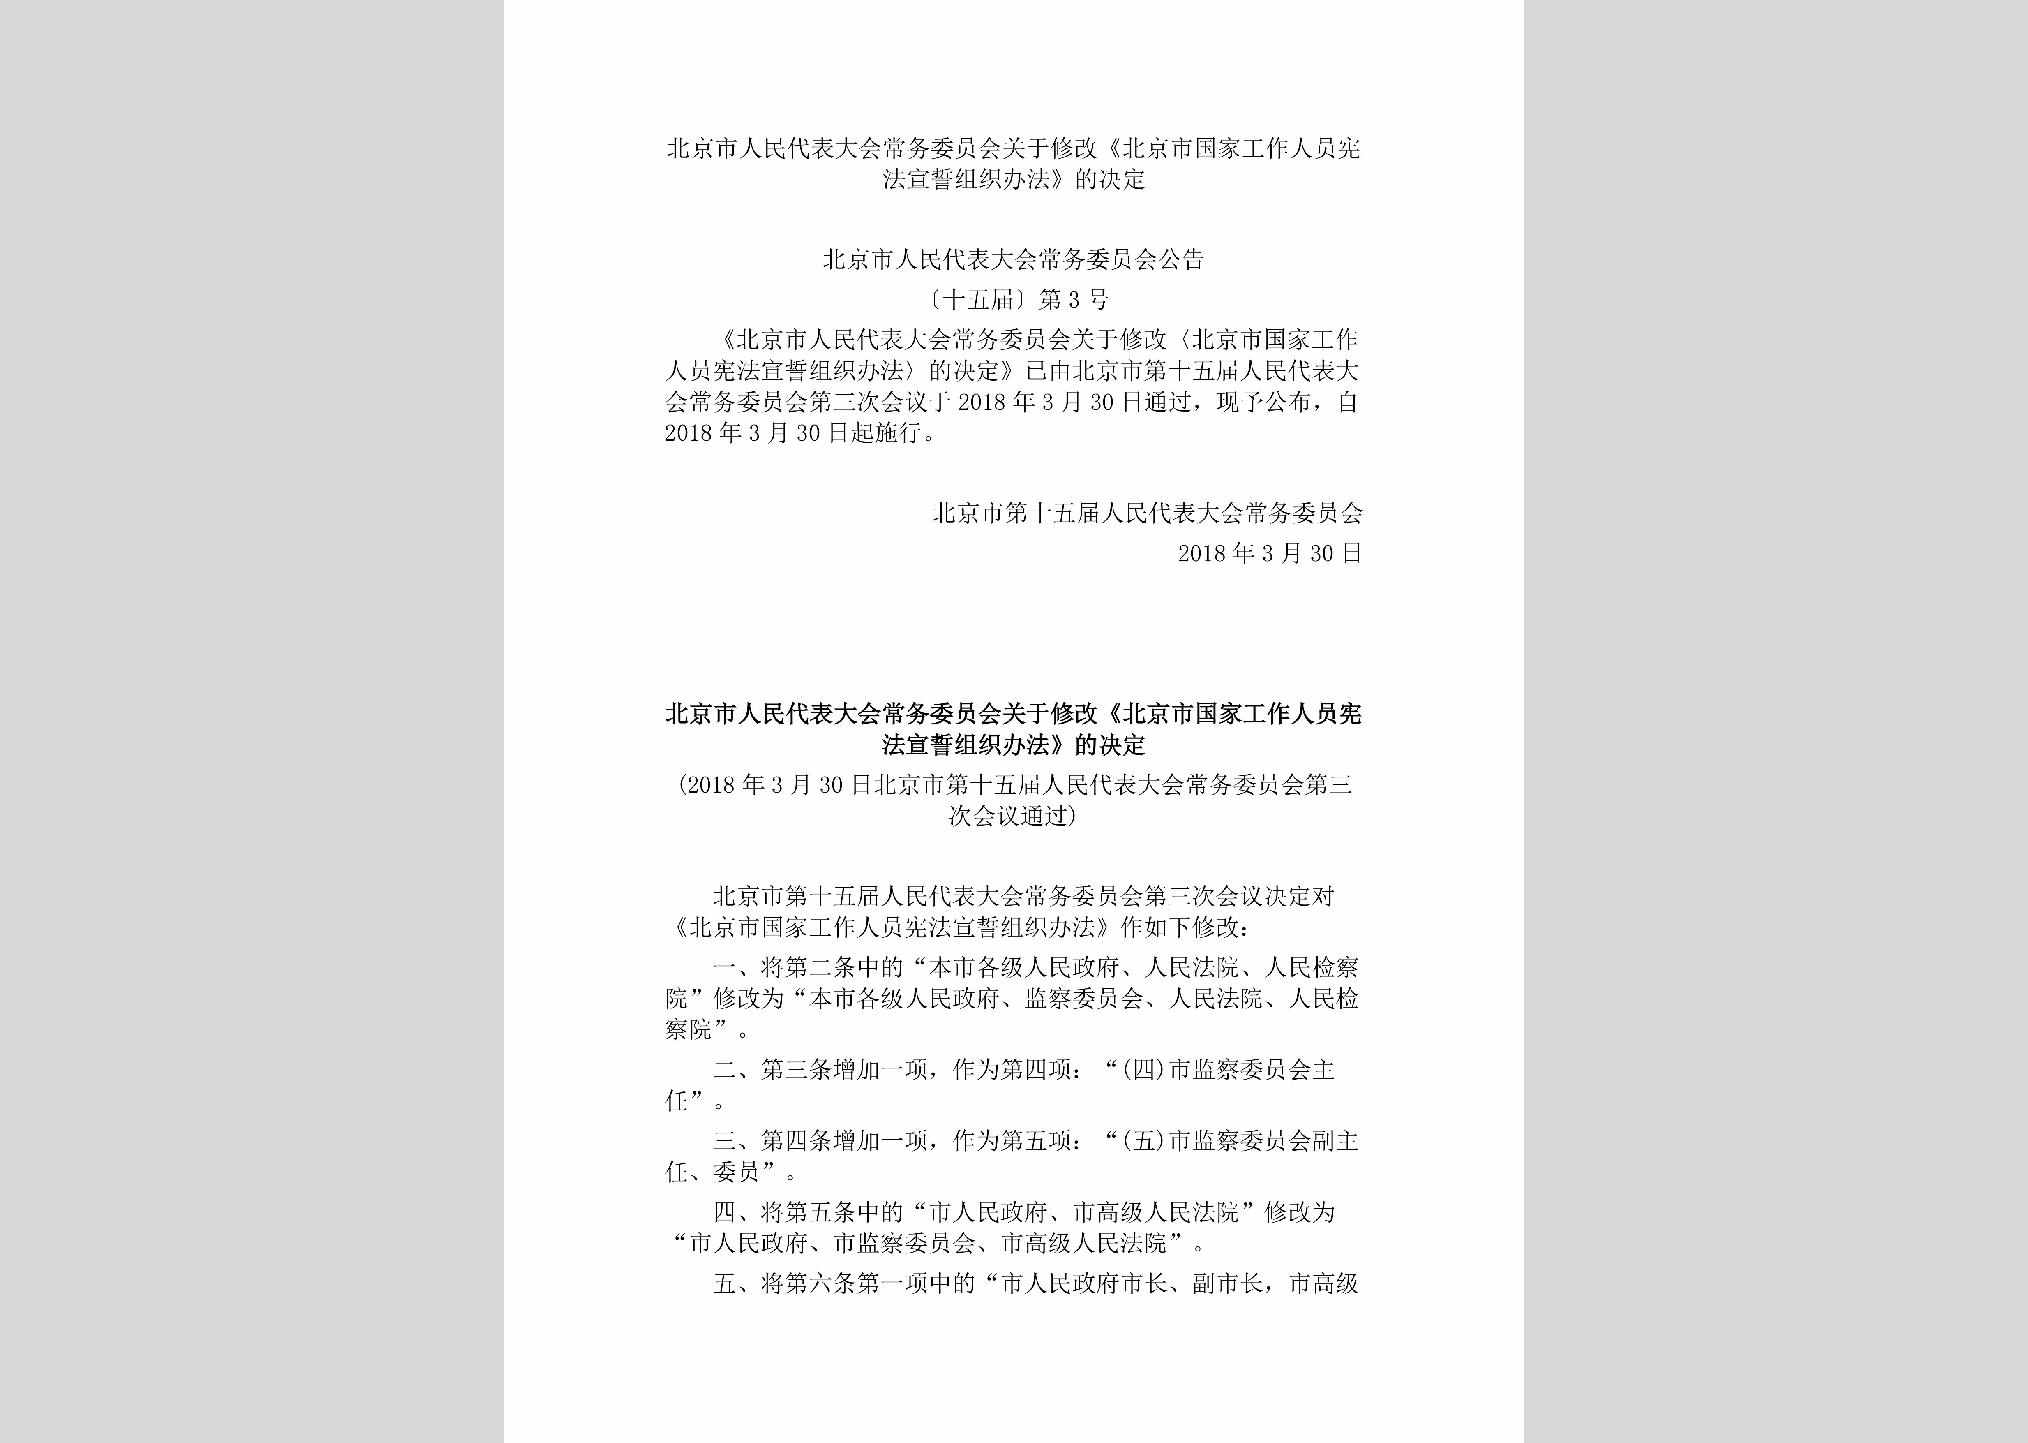 BJ-RDXGXFJD-2018：北京市人民代表大会常务委员会关于修改《北京市国家工作人员宪法宣誓组织办法》的决定